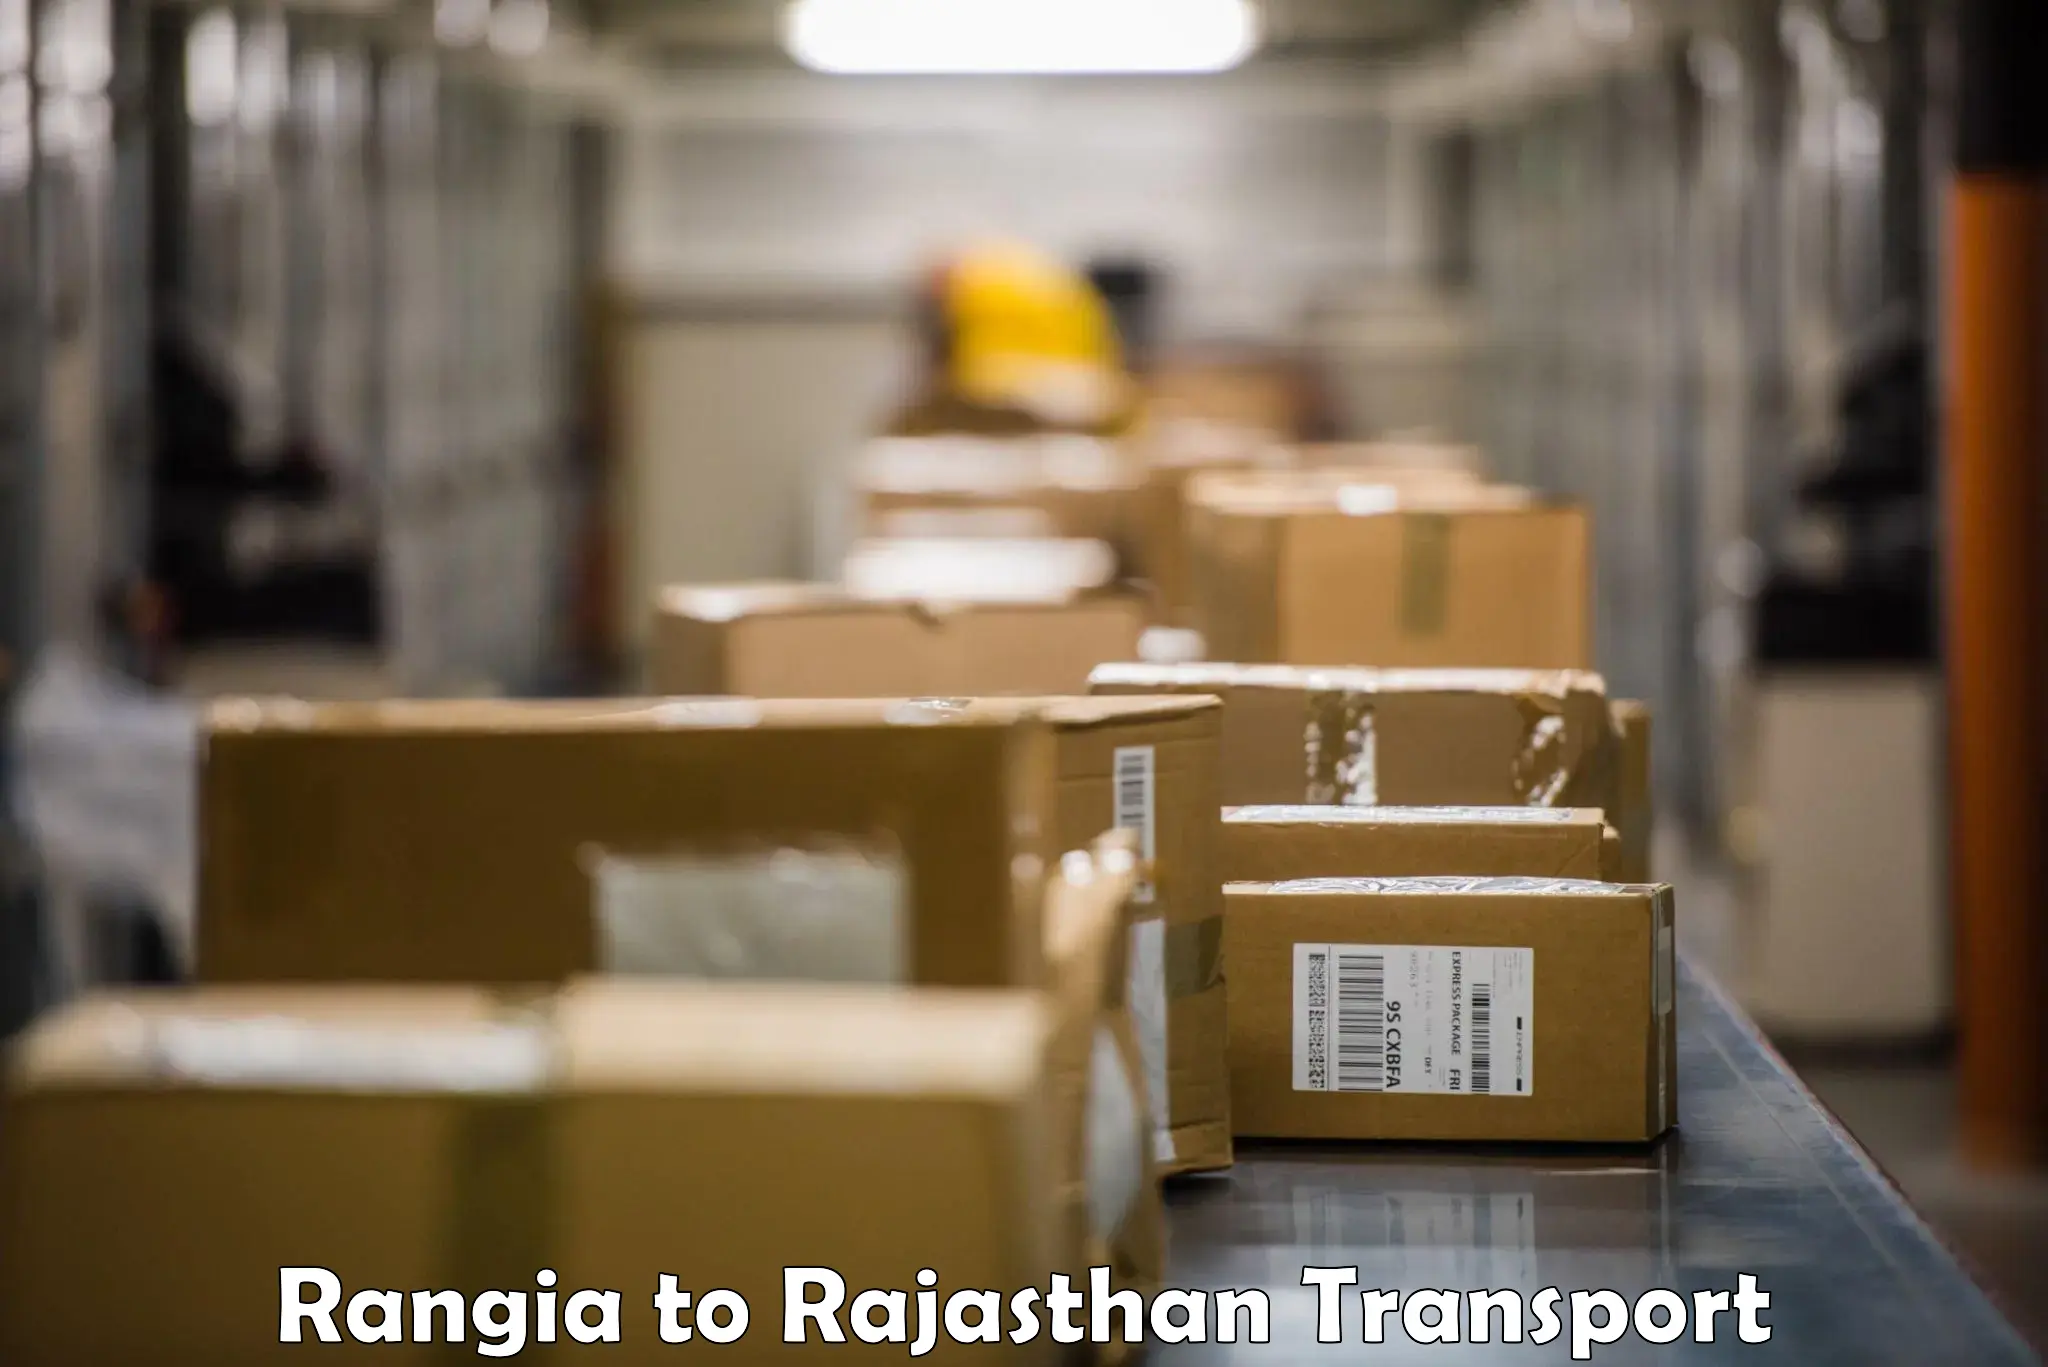 Container transport service Rangia to Bijainagar